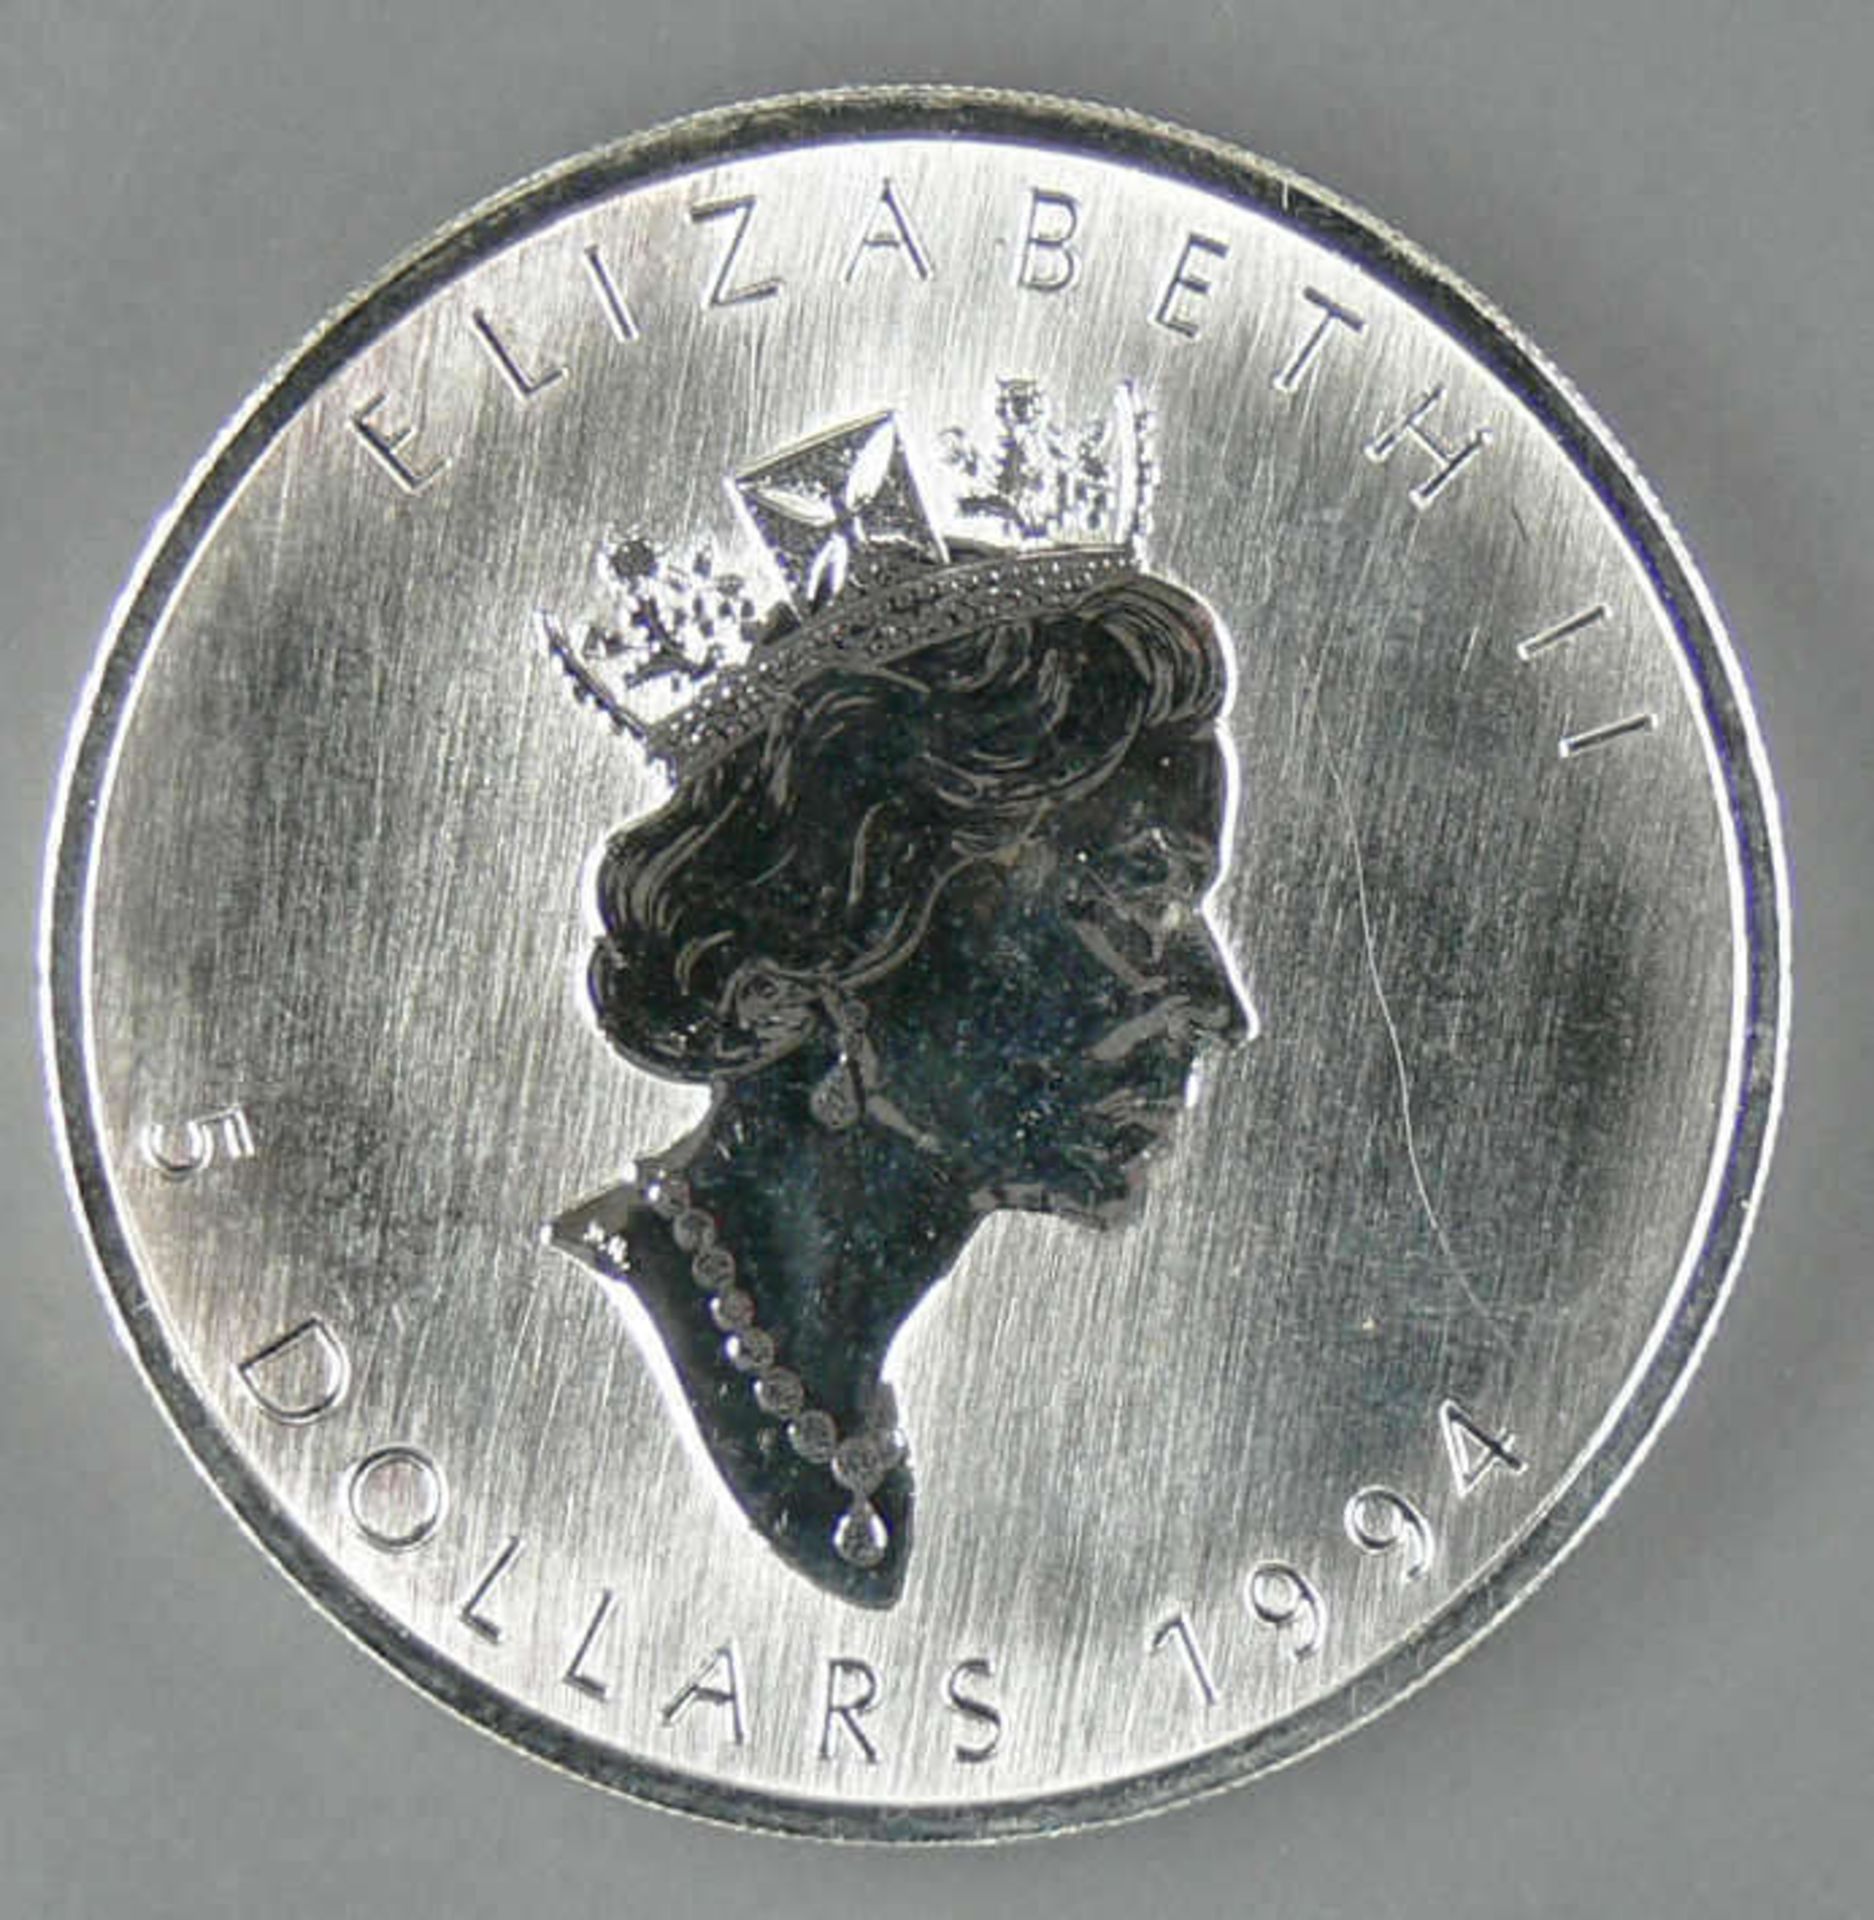 Kanada 1994, 5.- Dollar - Silbermünze "Maple Leaf". Silber 999, Gewicht: 1 oz. Mit Zertifikat. - Image 2 of 2